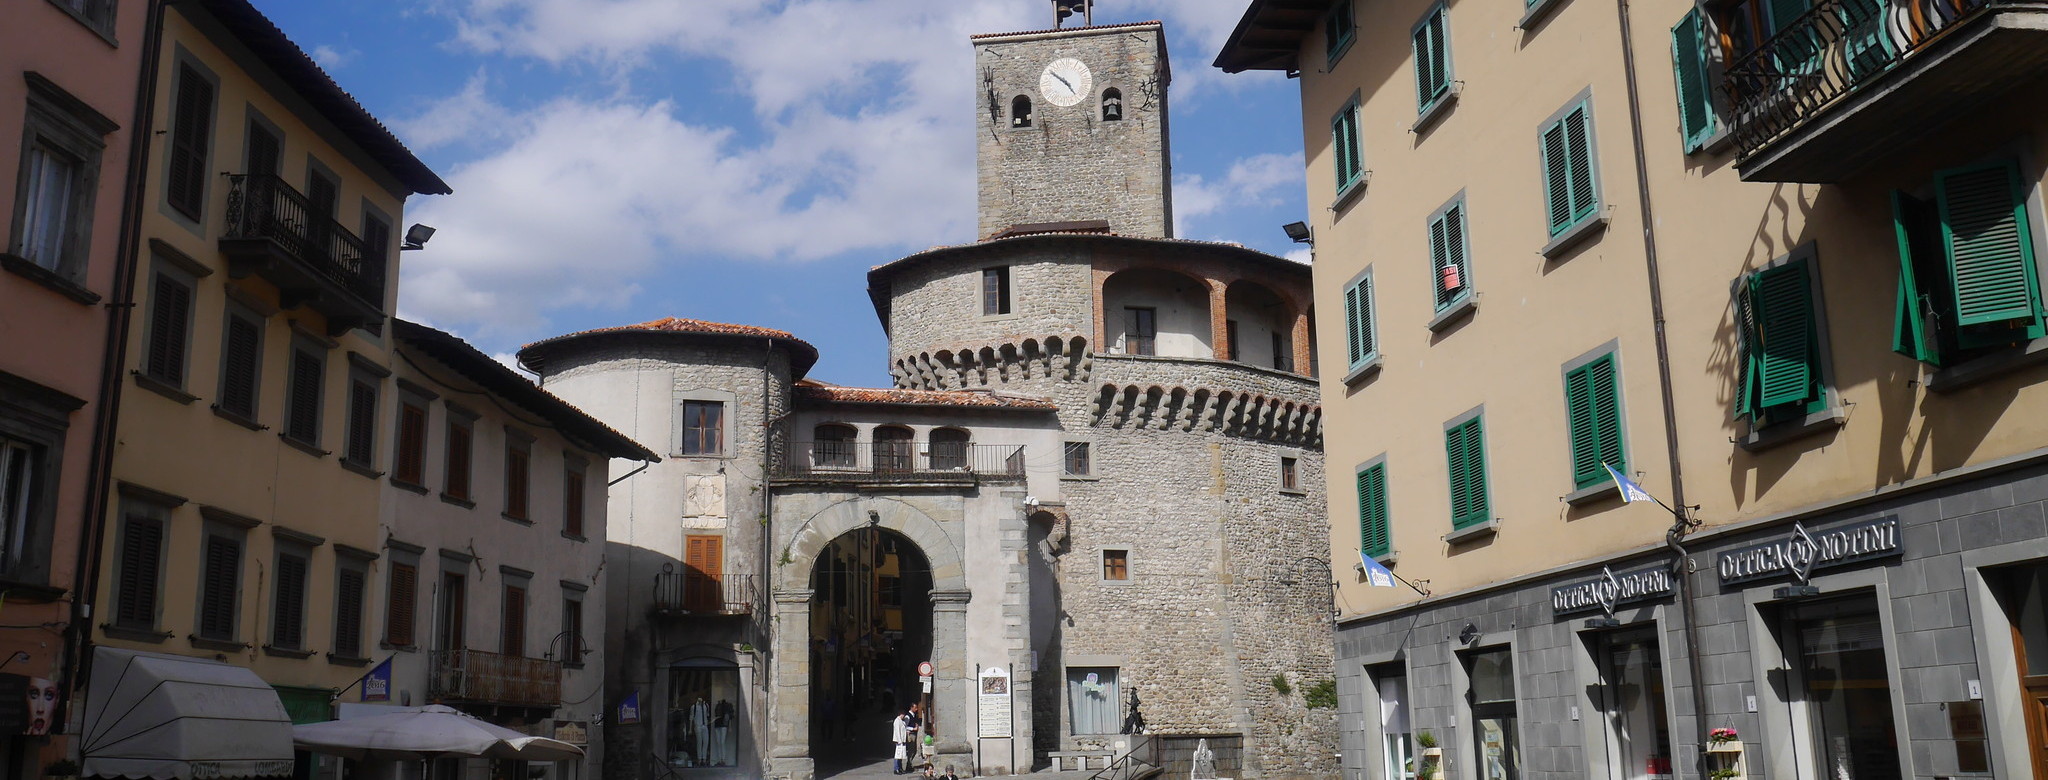 Castelnuovo di Garfagnana &ndash; authentische italienische Kleinstadt.